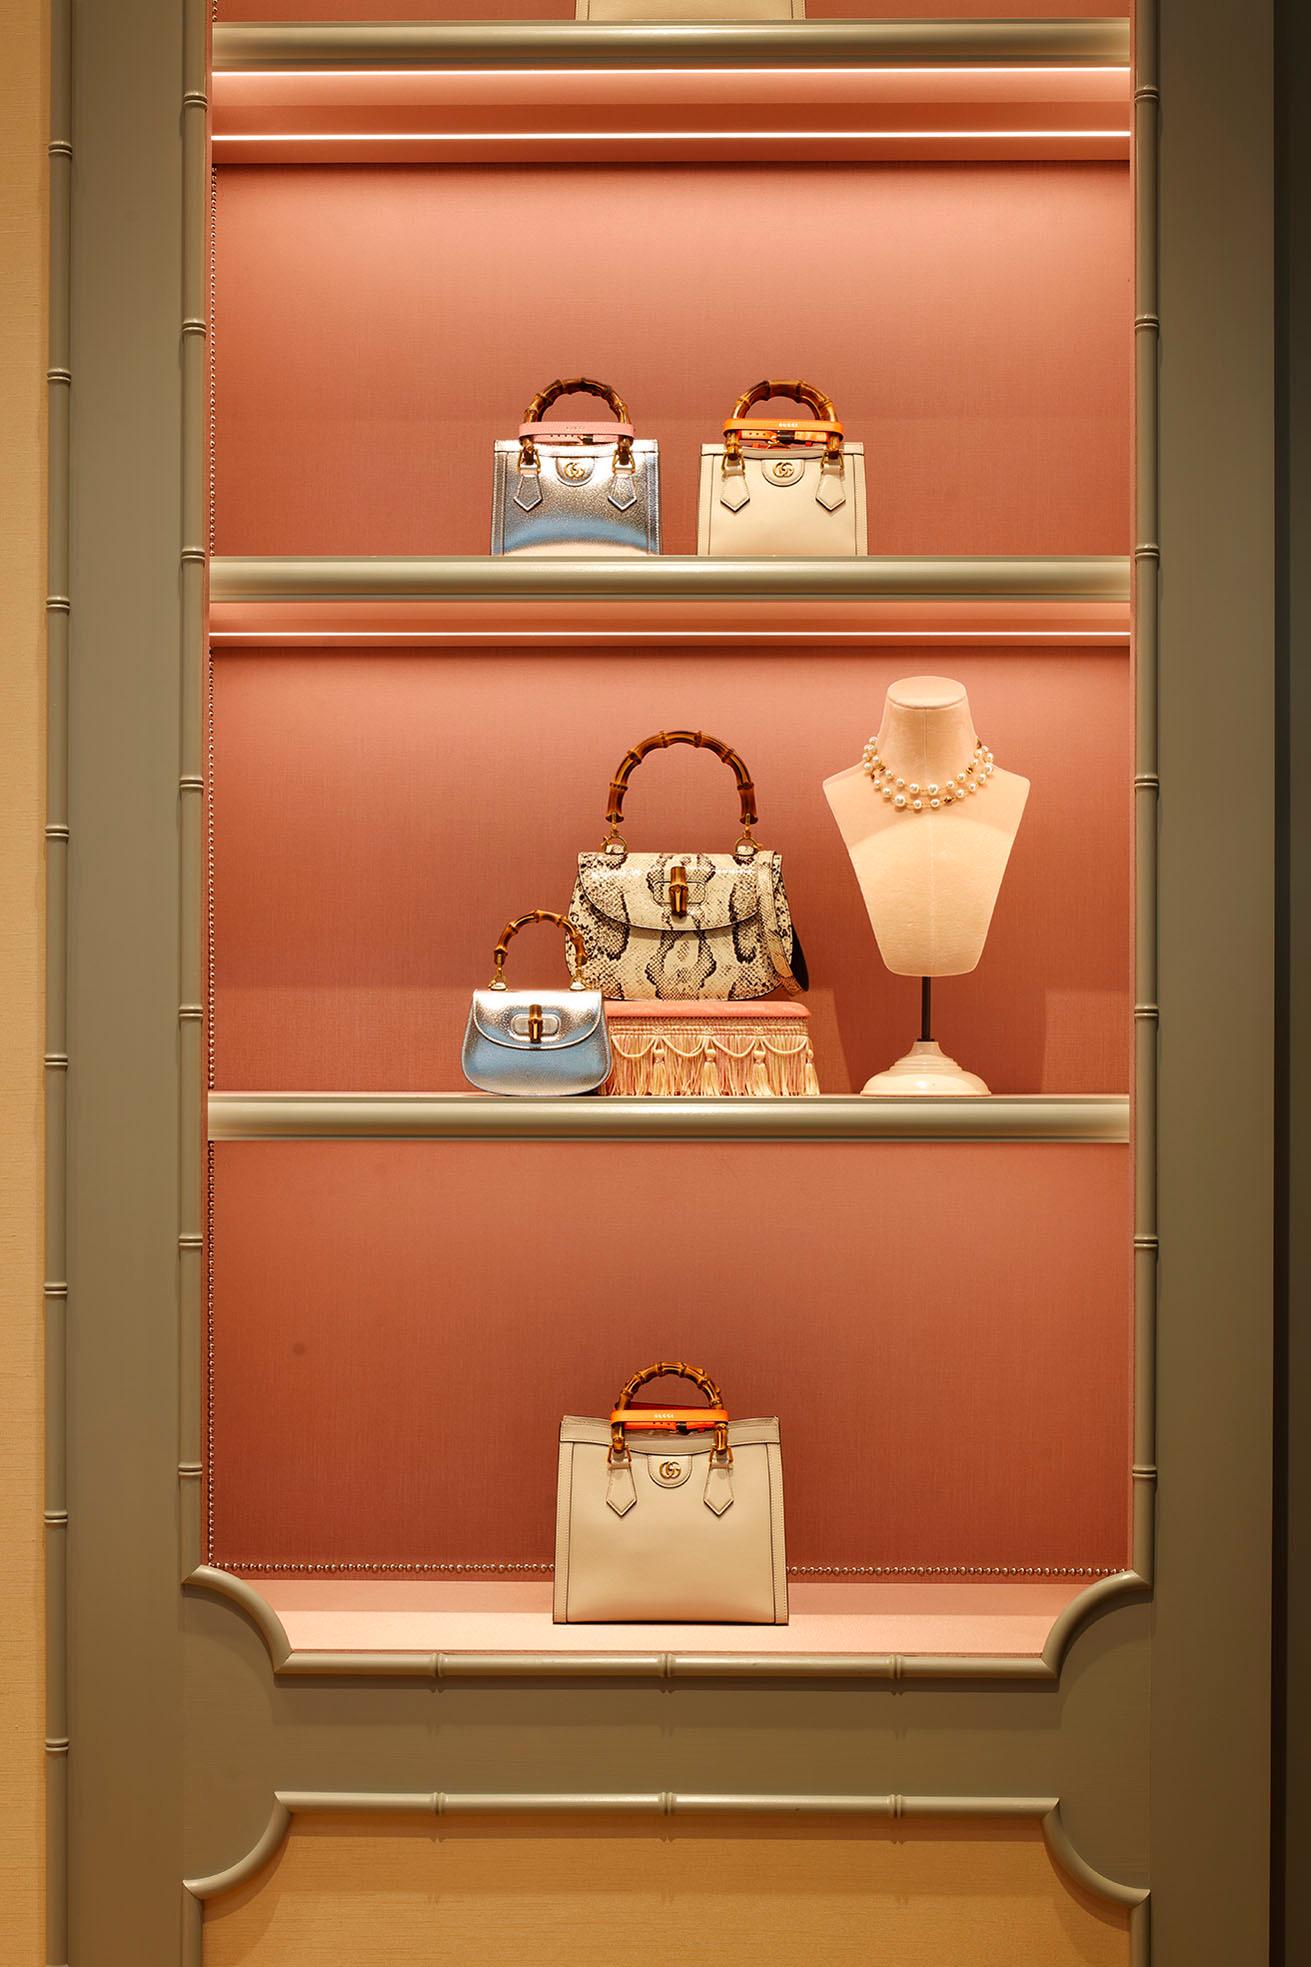 竹提手包于 1947 年发布并成为该品牌的标志。 商店的一楼和二楼排列着新系列，为他们的历史增添了现代诠释。 中间一排是“Gucci Bamboo 1947”，上下两排是“Gucci Diana”。